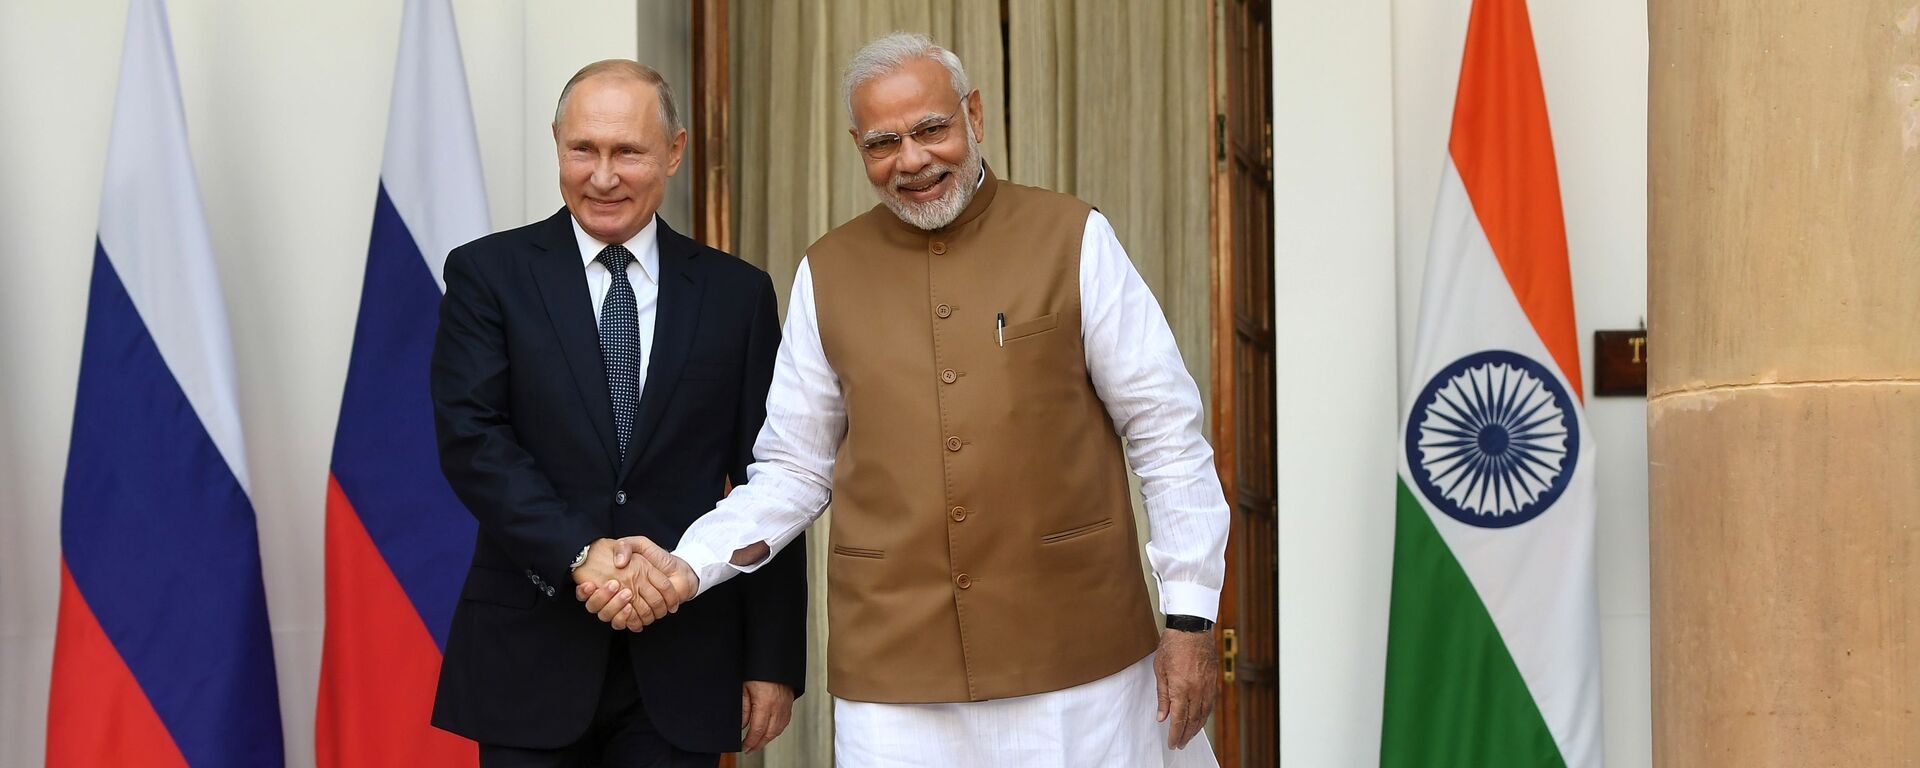 Bộ Ngoại giao Nga khẳng định phát triển hợp tác với Ấn Độ, đặc biệt là lĩnh vực hạt nhân - Sputnik Việt Nam, 1920, 03.12.2021